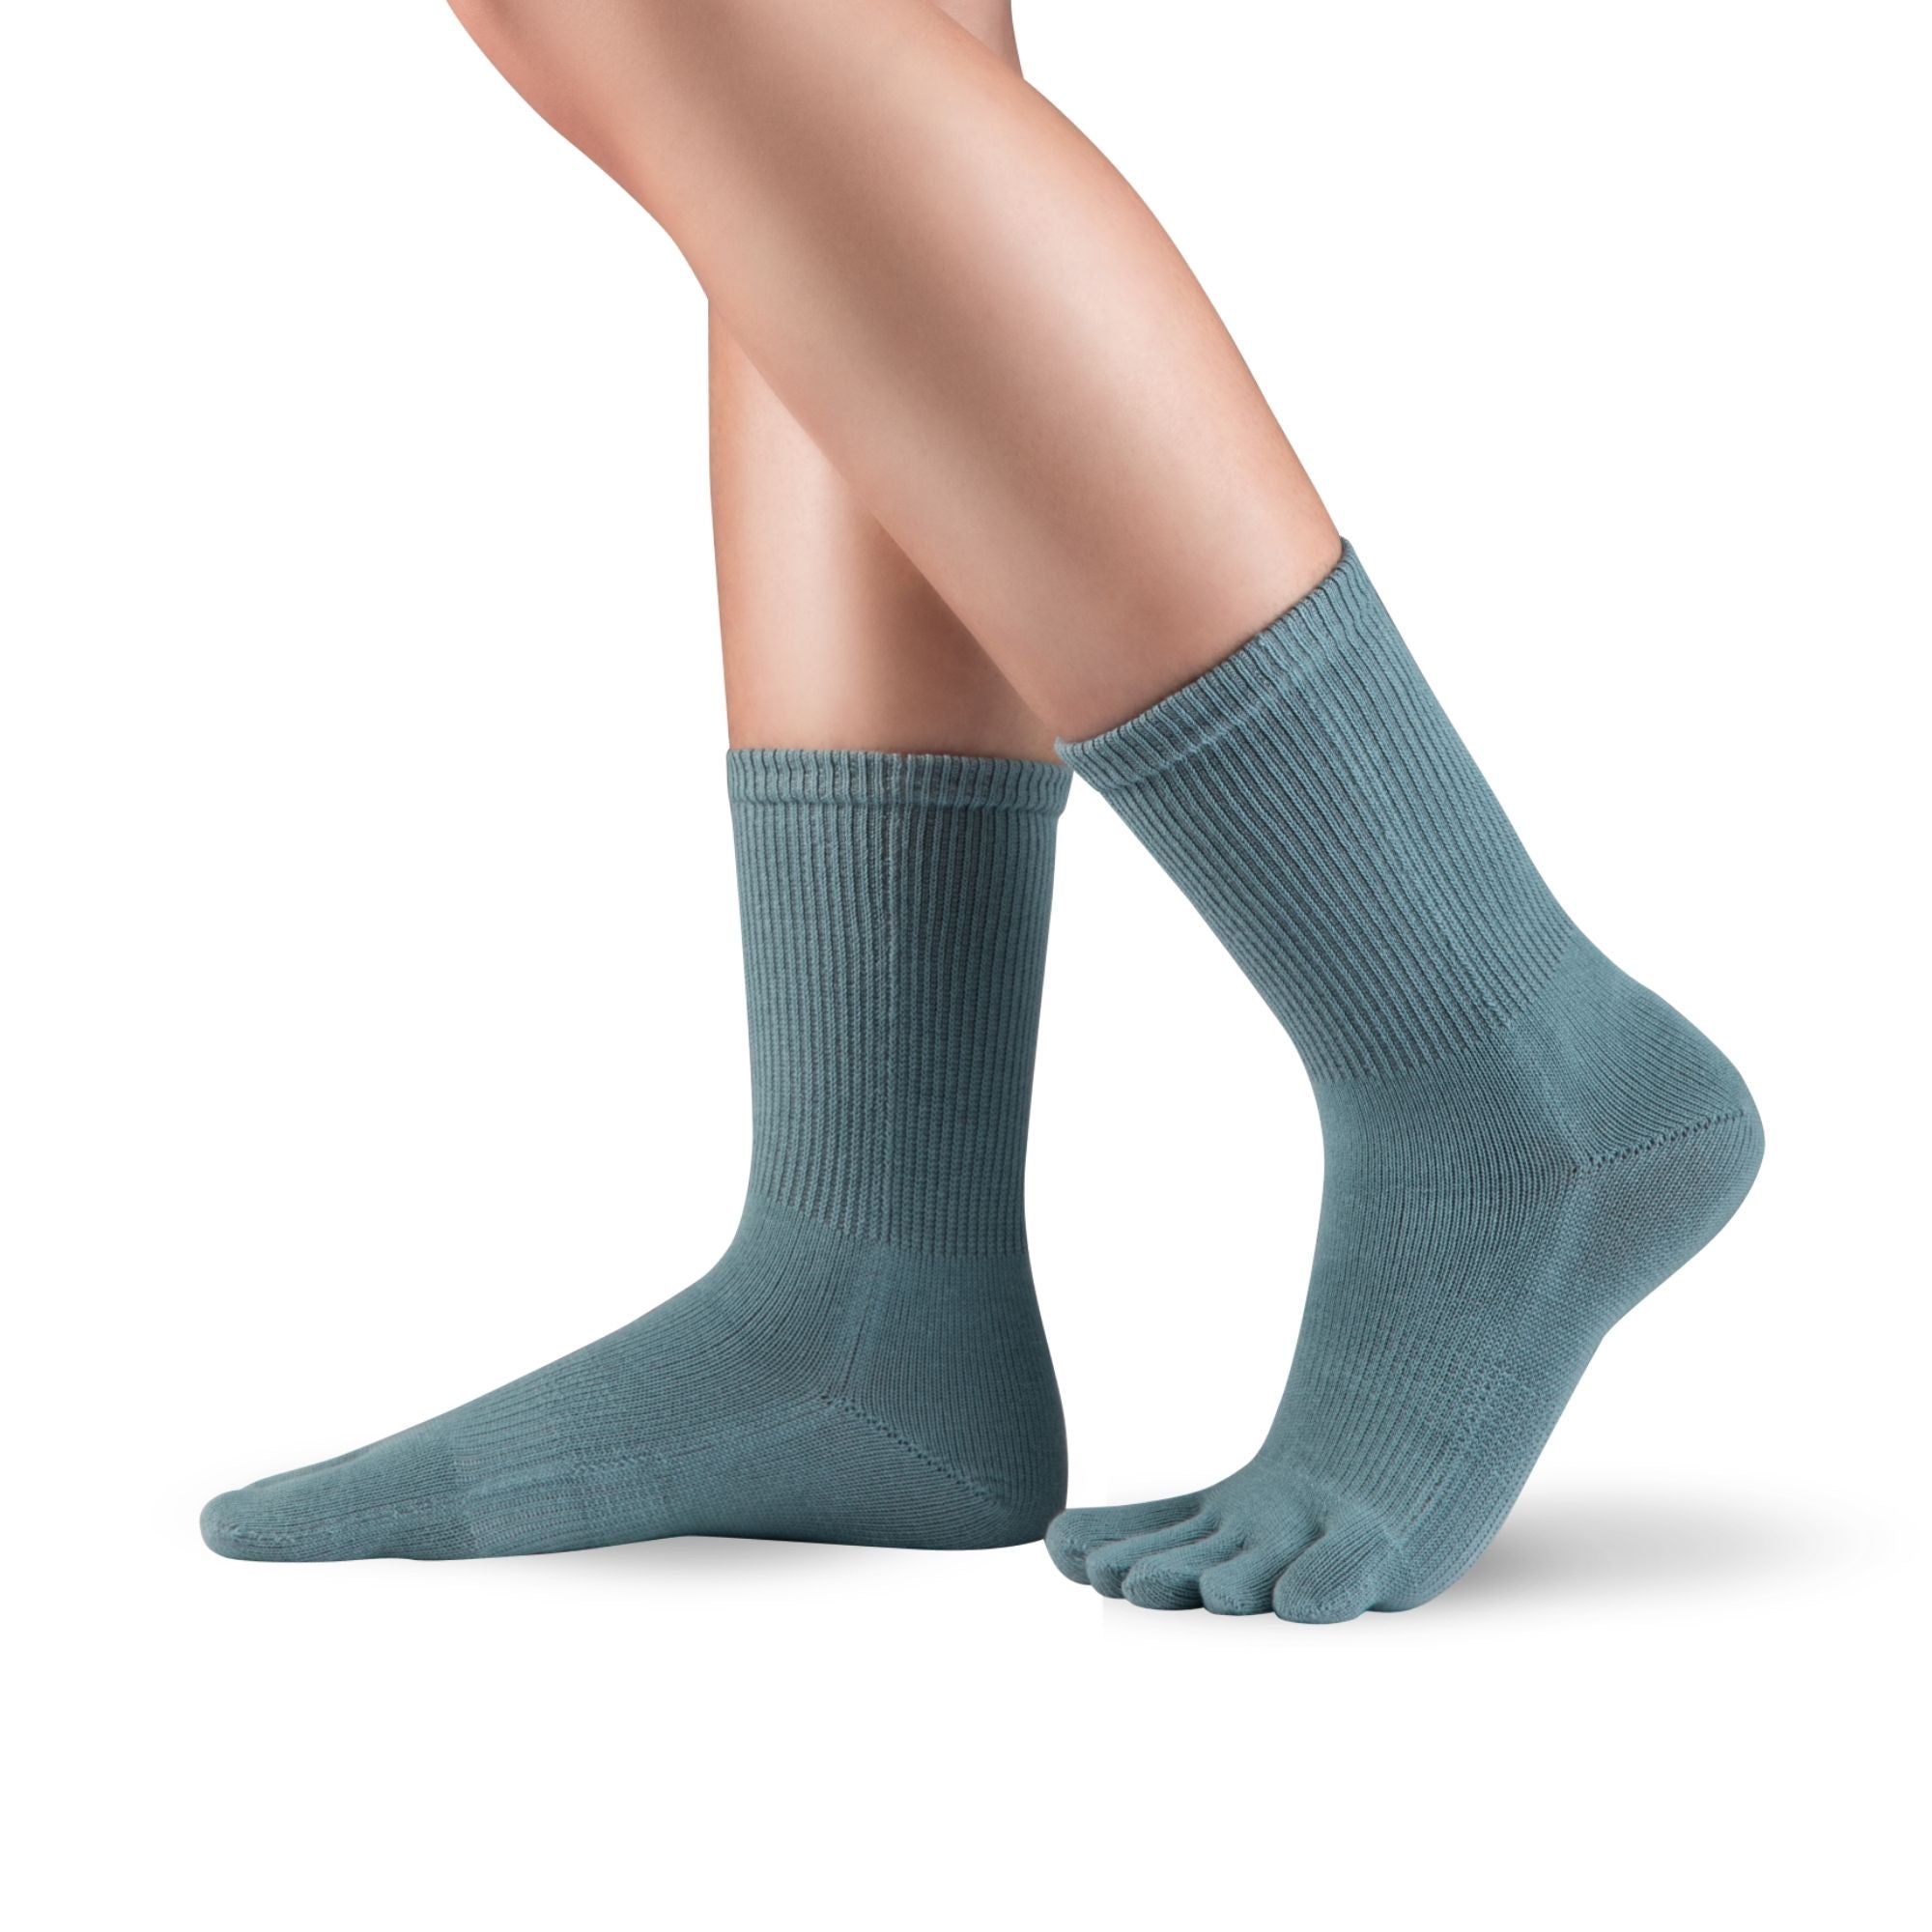 Knitido Dr. Foot Hallux Valgus chaussettes à orteils longueur mollet, couleur gris-bleu